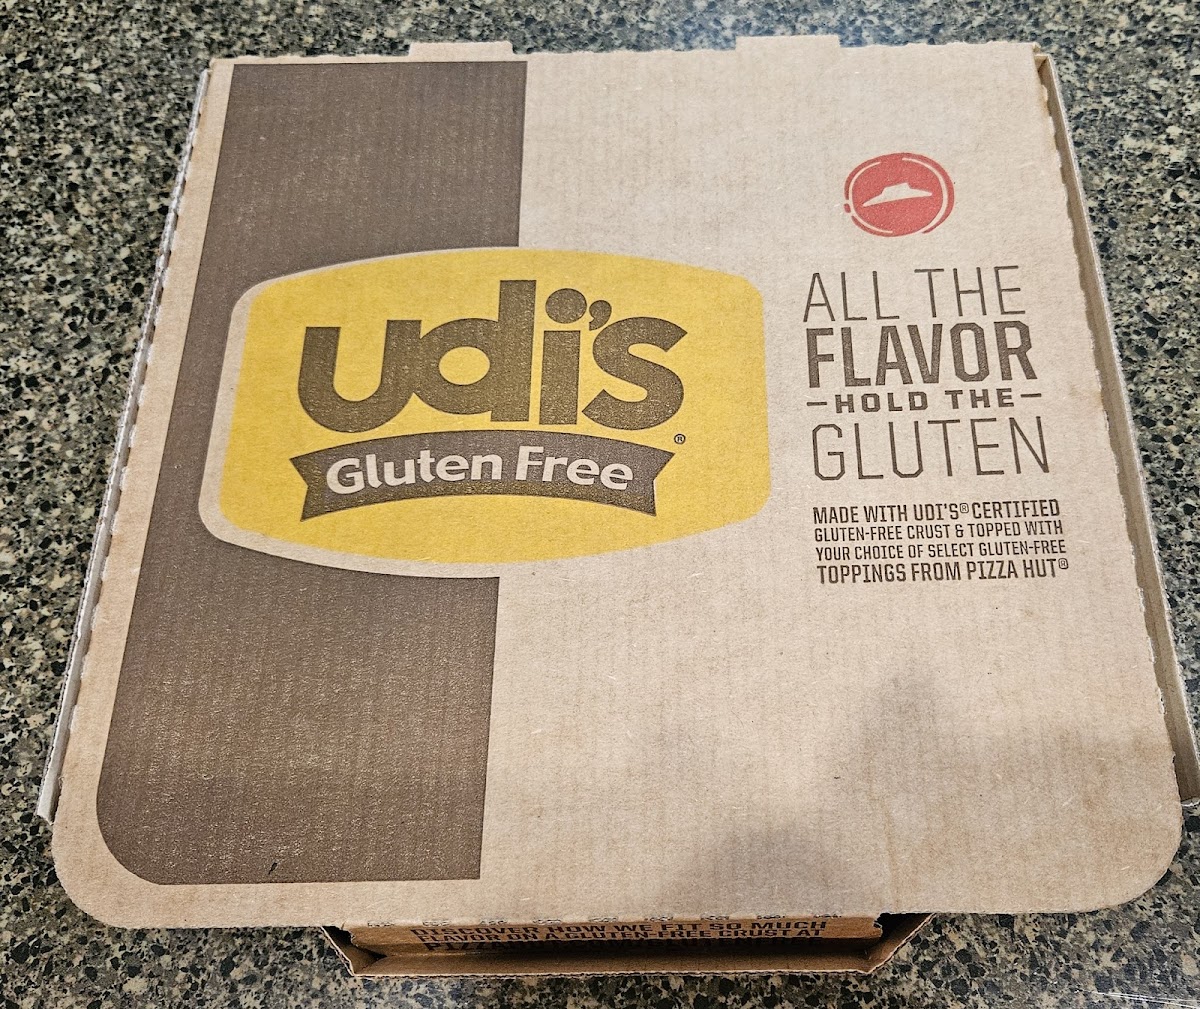 Udi's brand crust